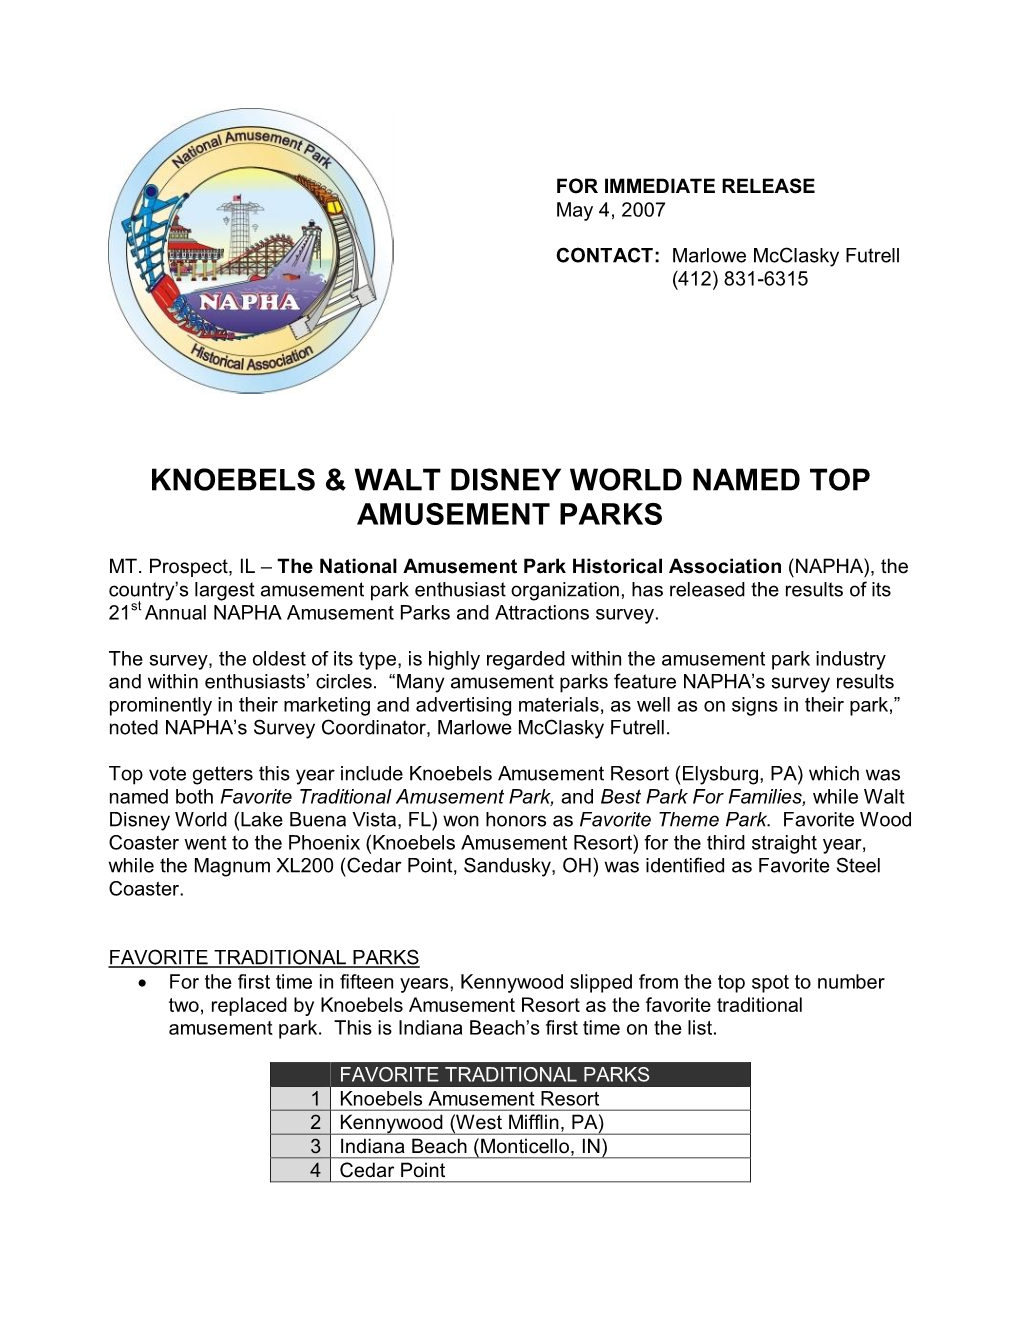 Knoebels & Walt Disney World Named Top Amusement Parks